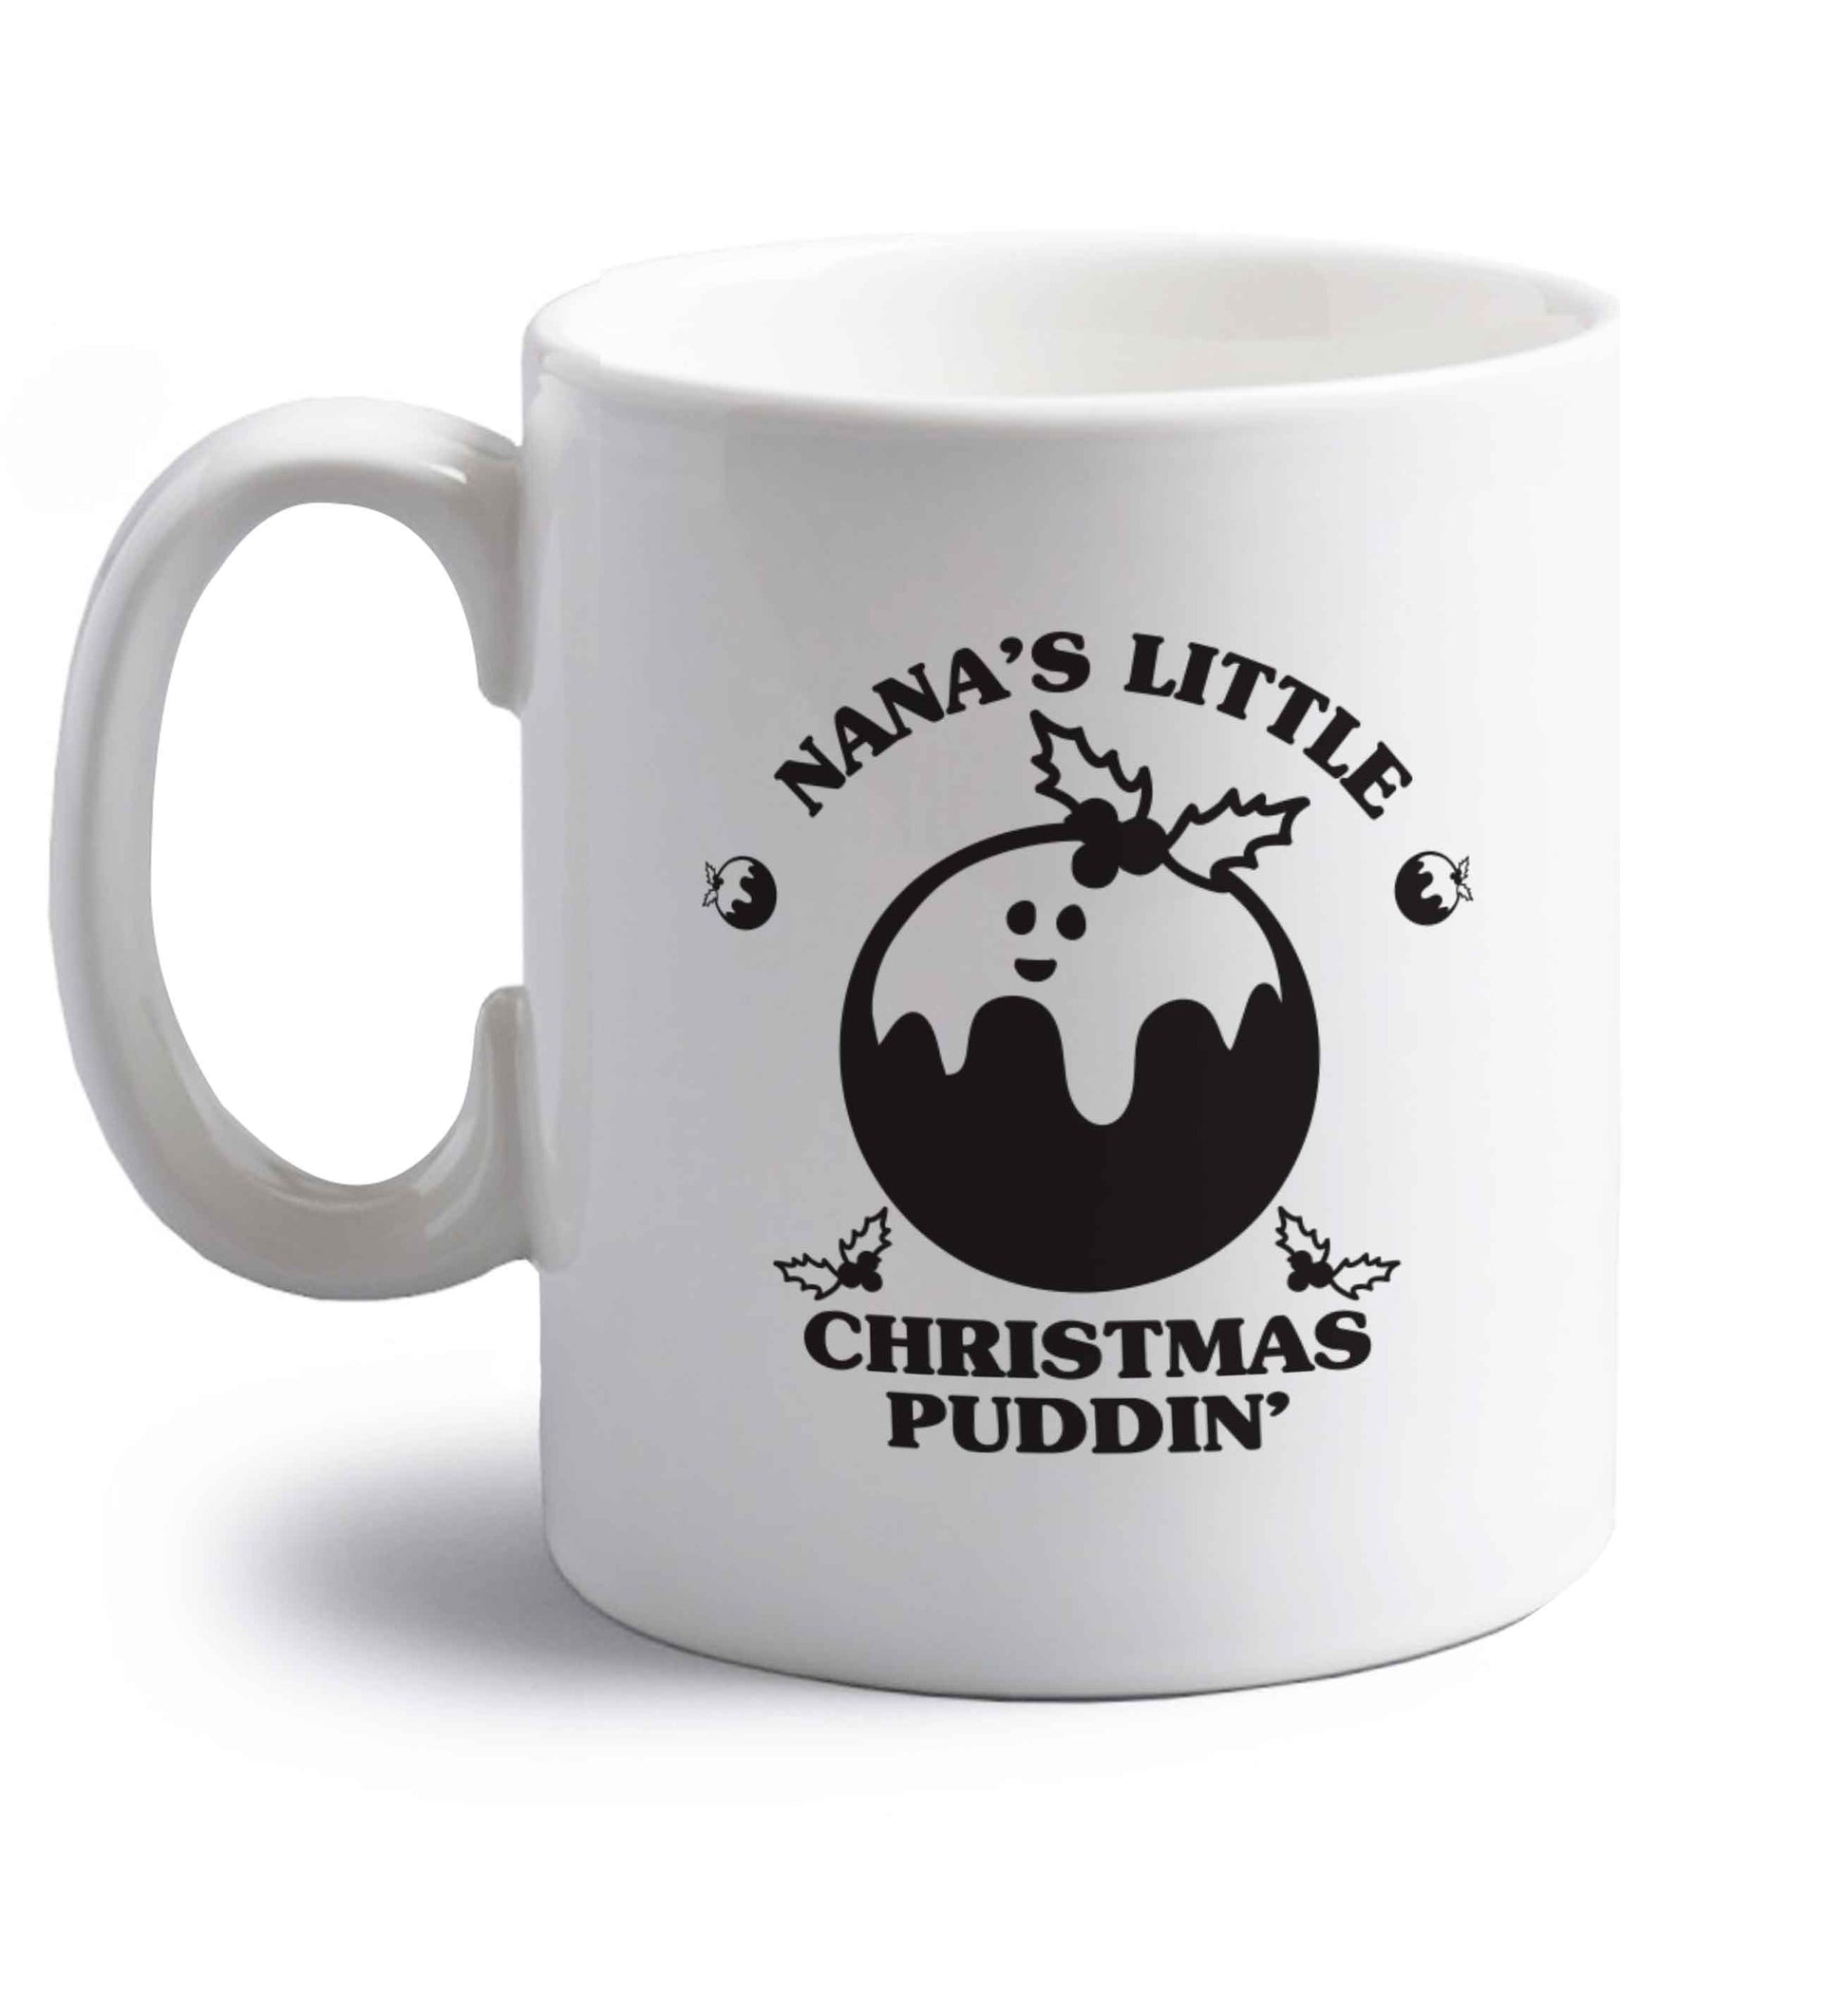 Nana's little Christmas puddin' right handed white ceramic mug 